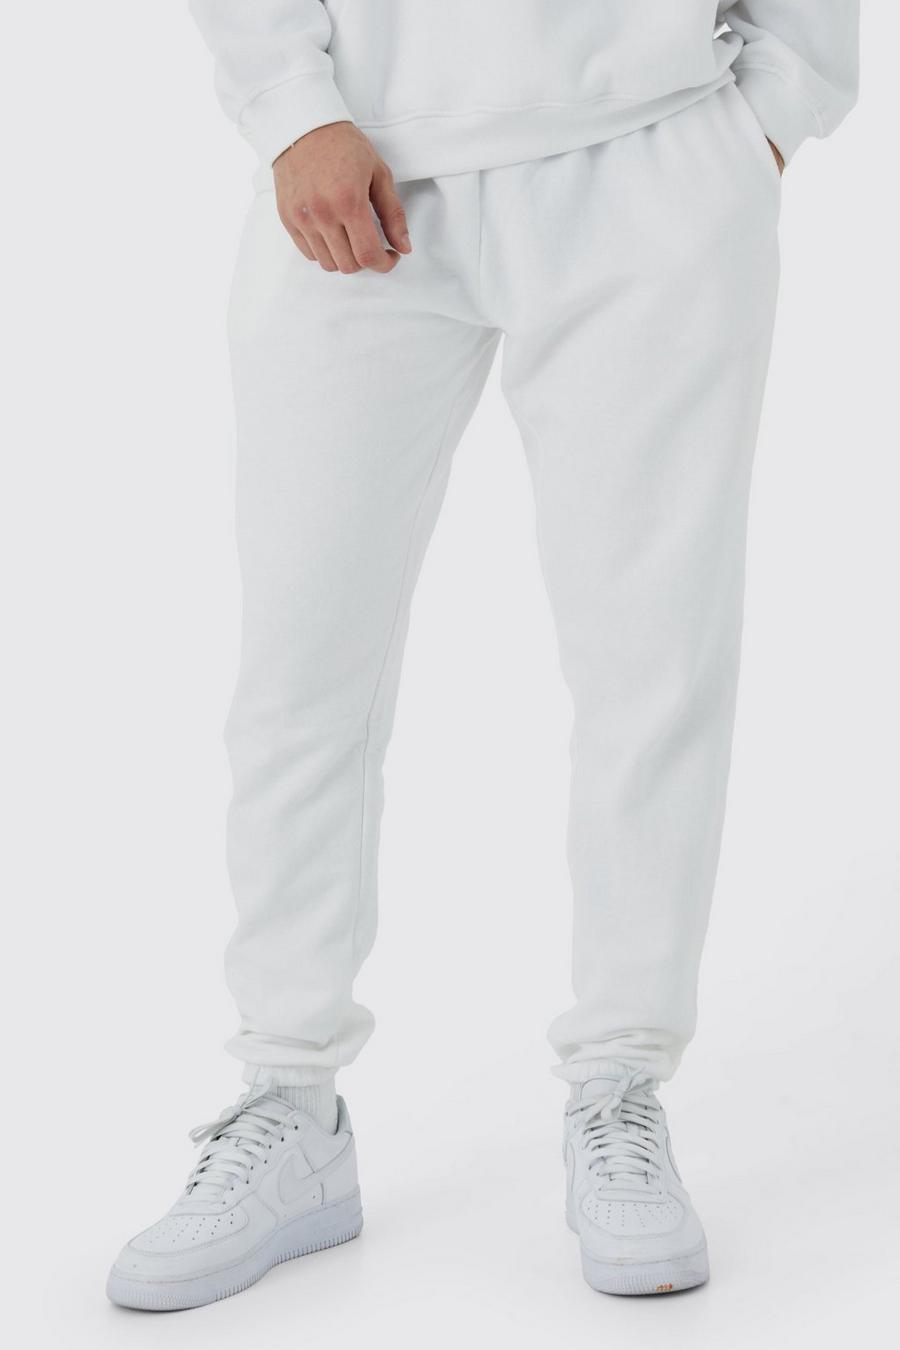 Pantaloni tuta Tall Basic Core Fit, White